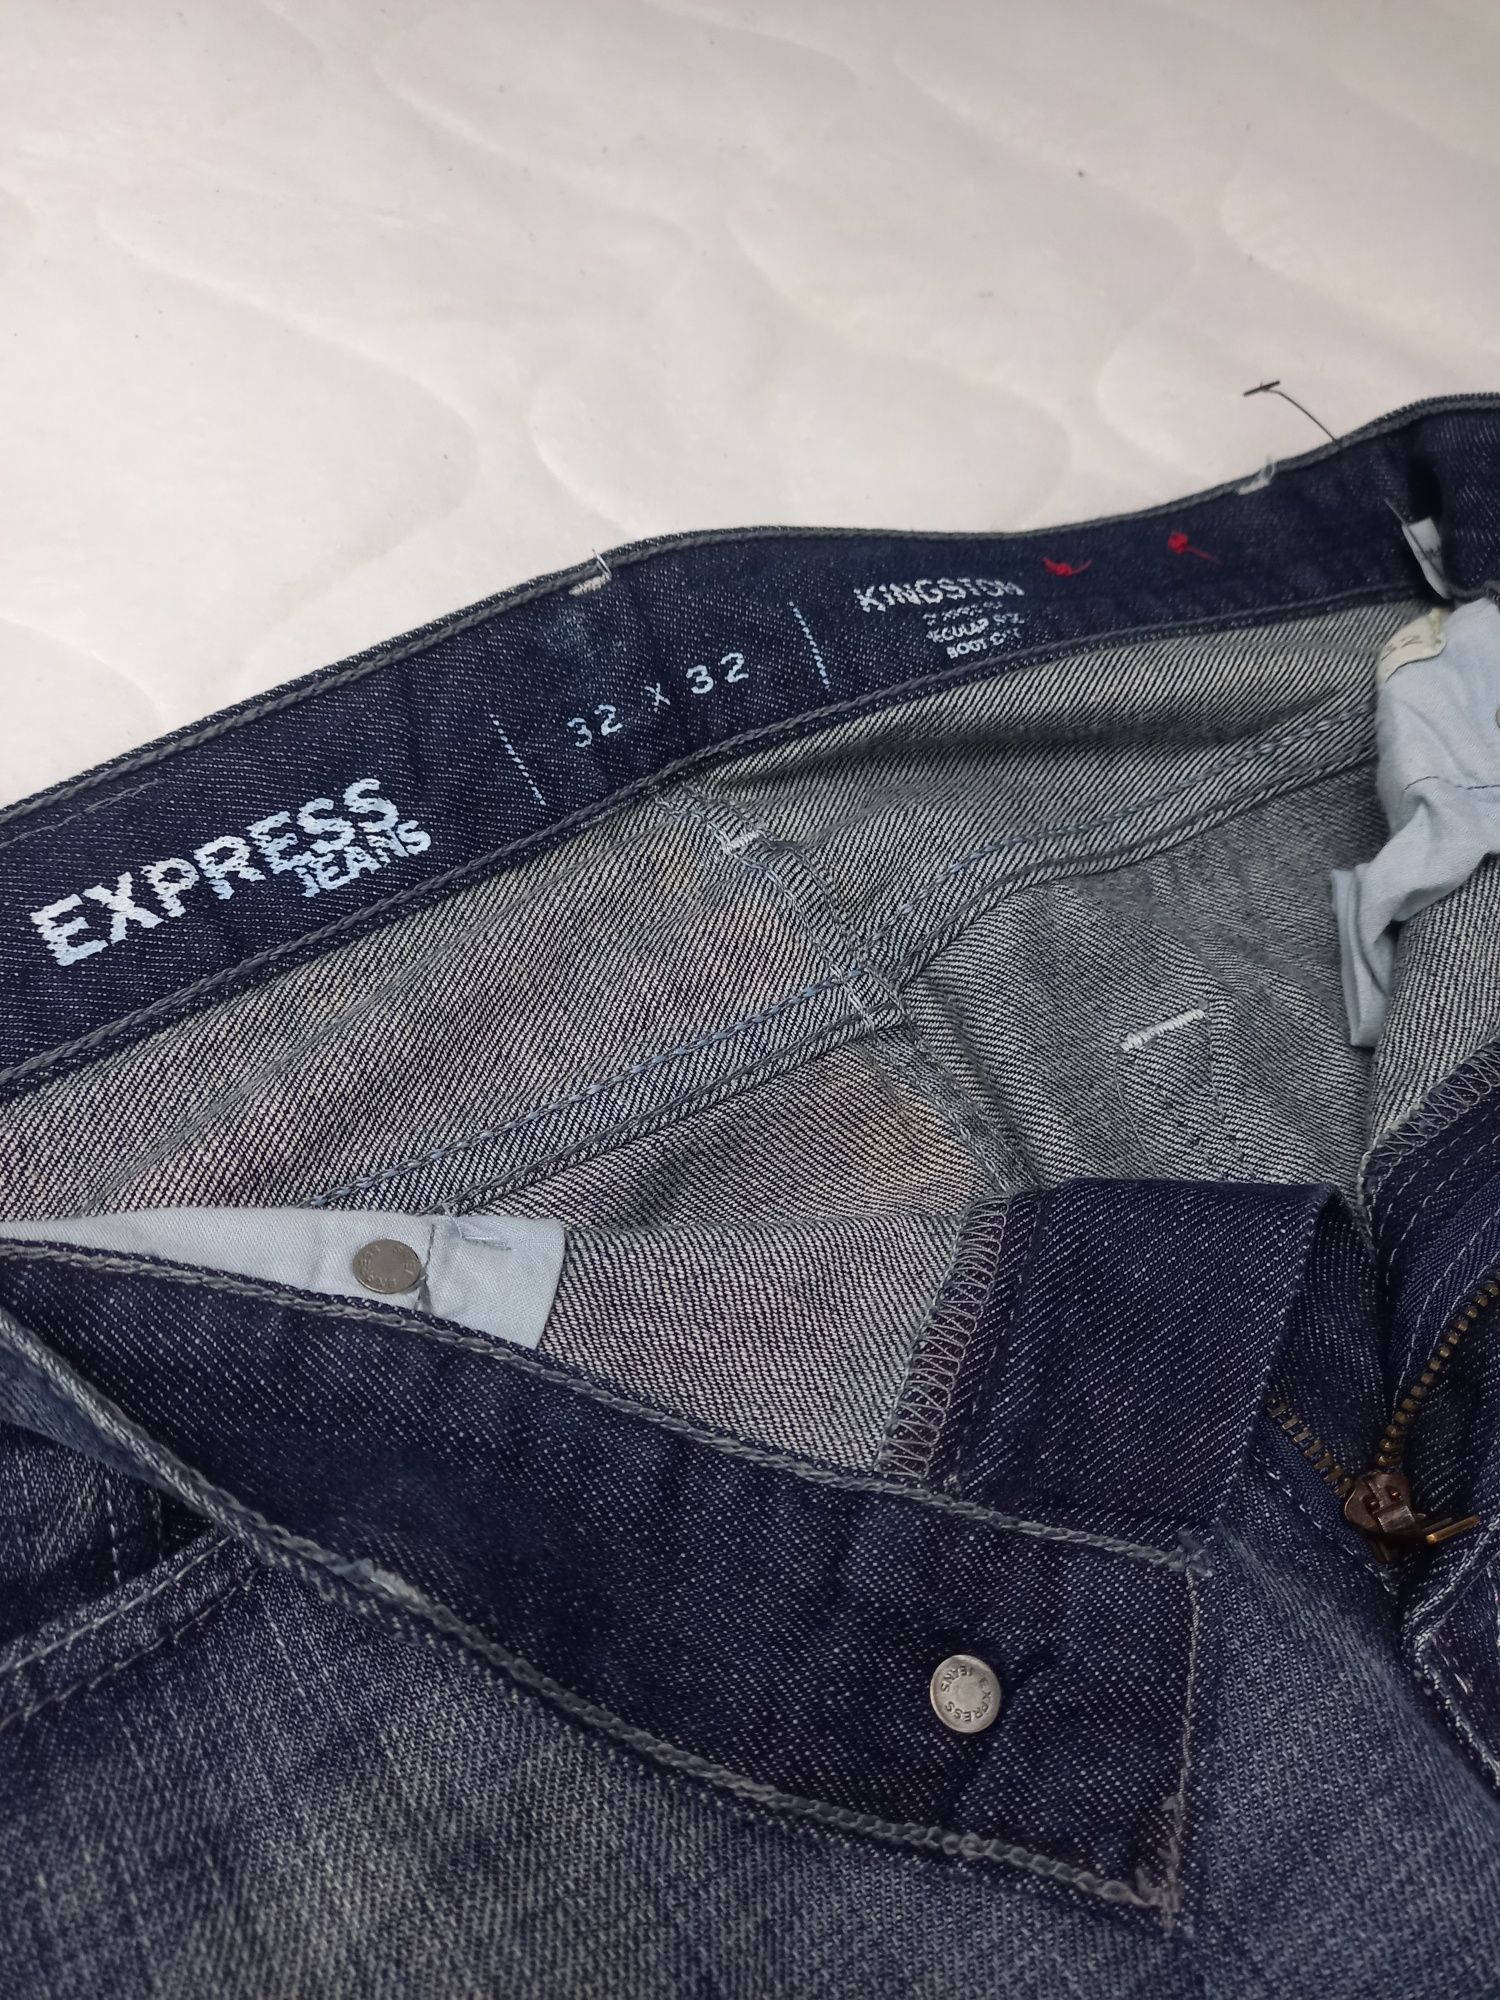 Spodnie męskie EXPRESS JEANS rozmiar 32x32